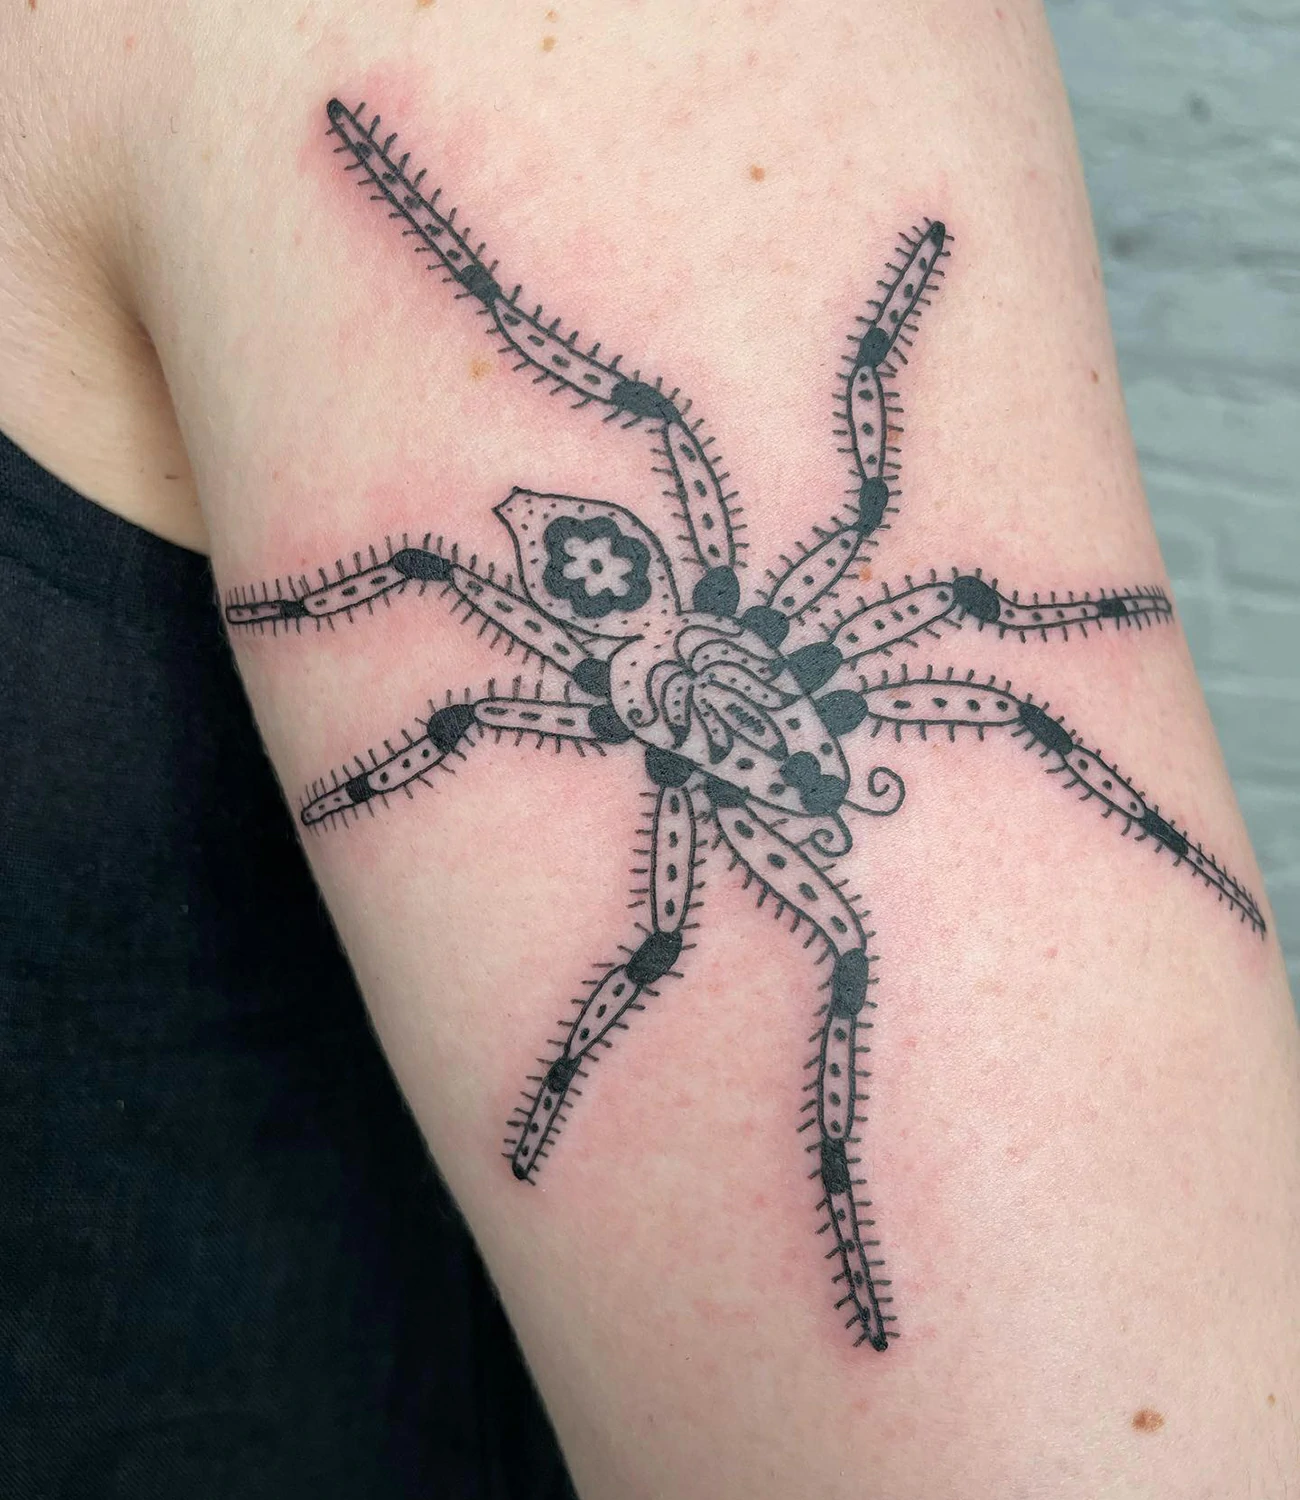 Spider hand tattoo